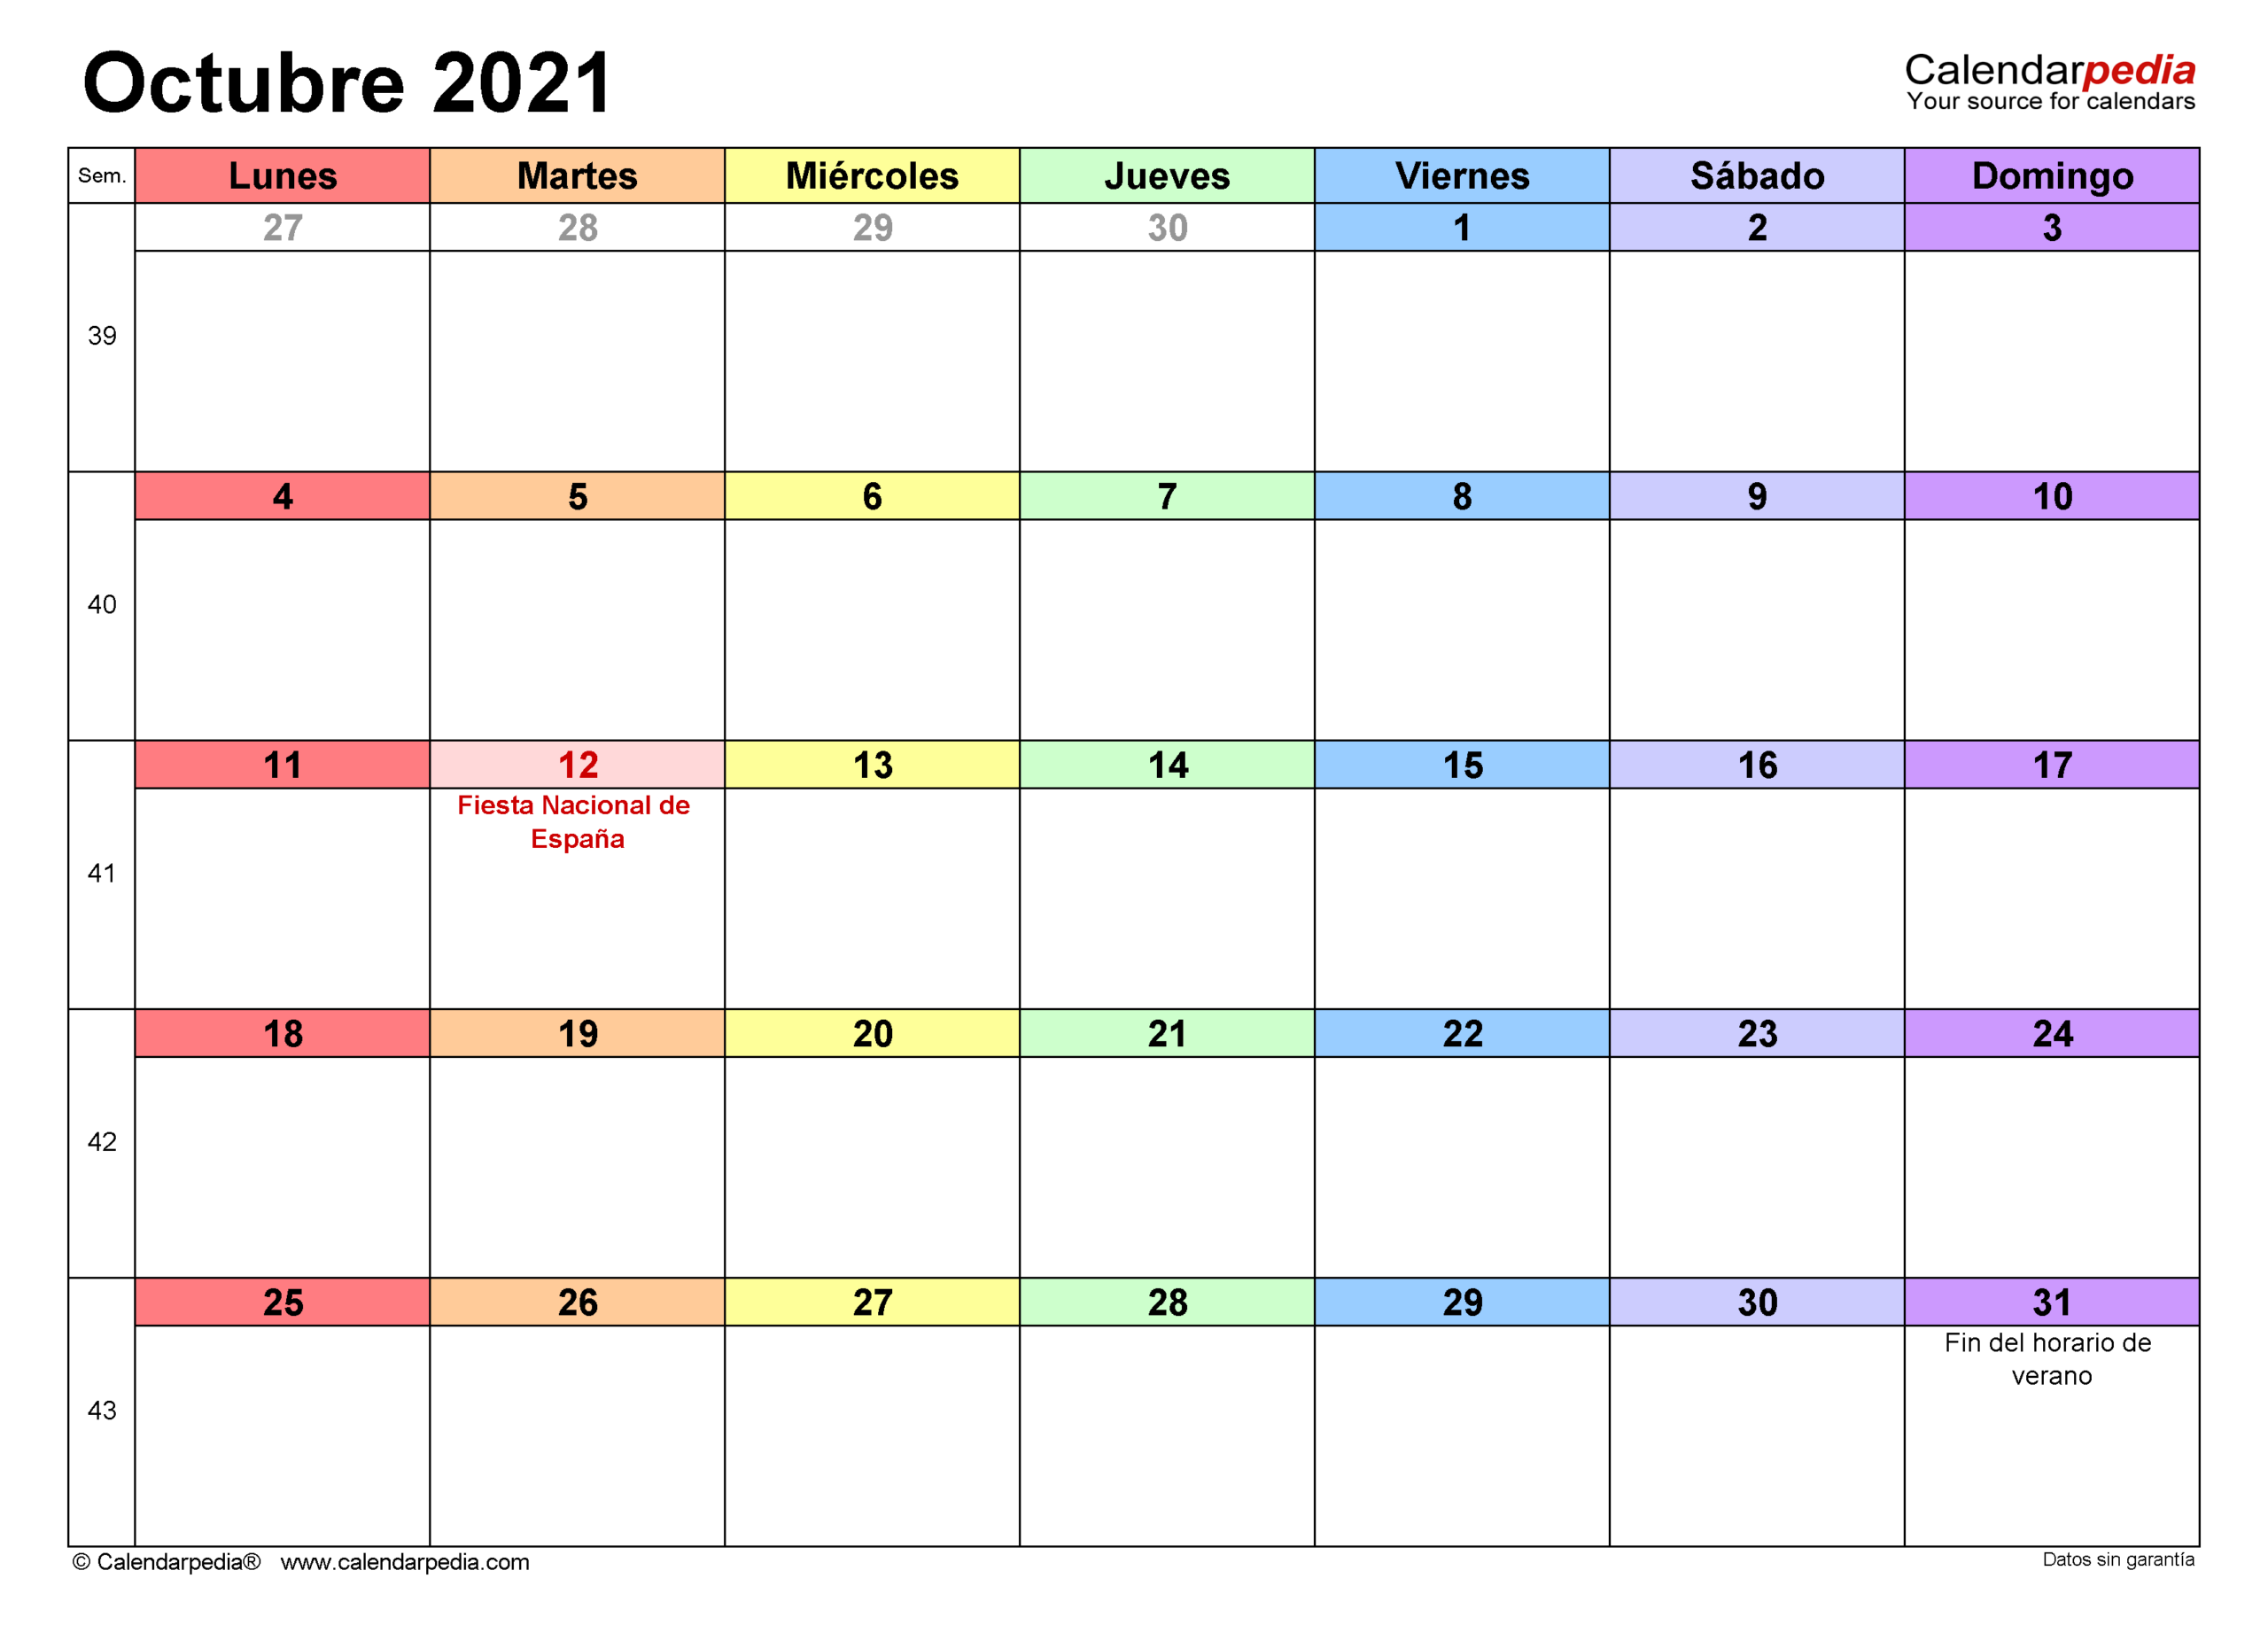 Calendario Octubre 2021  Calendarpedia inside Calendario Excel 2021 Plantilla